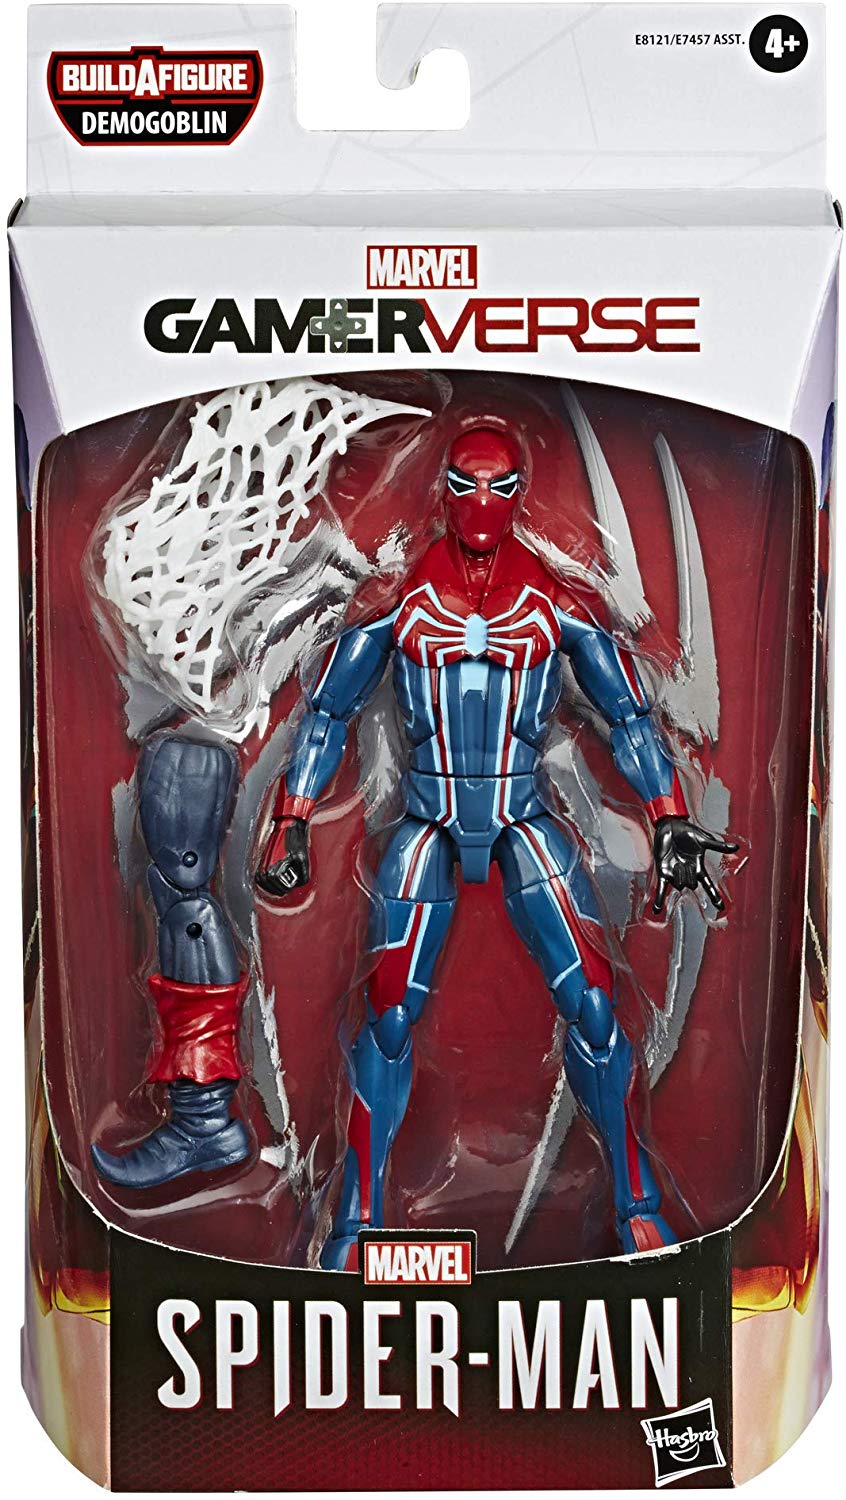 spider man gamerverse action figure